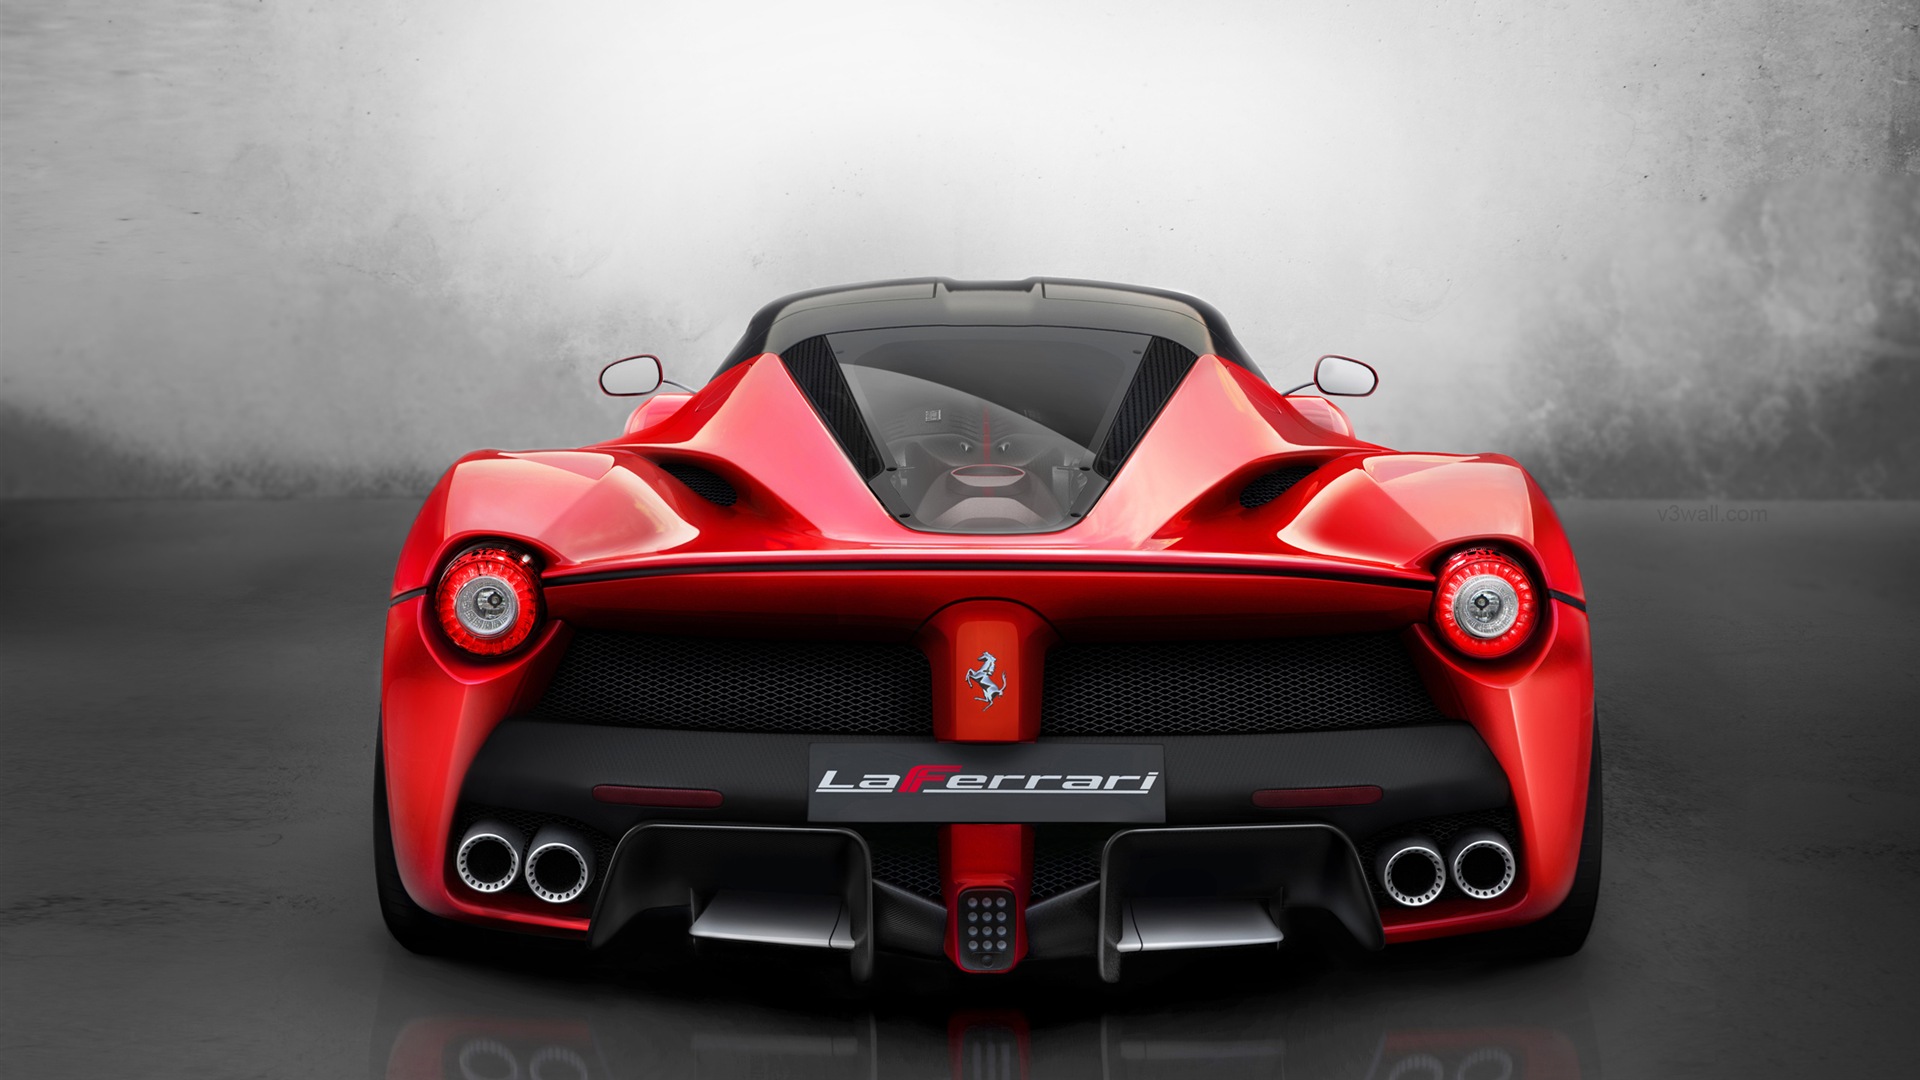 2013フェラーリLaFerrari赤いスーパーカーのHD壁紙 #5 - 1920x1080